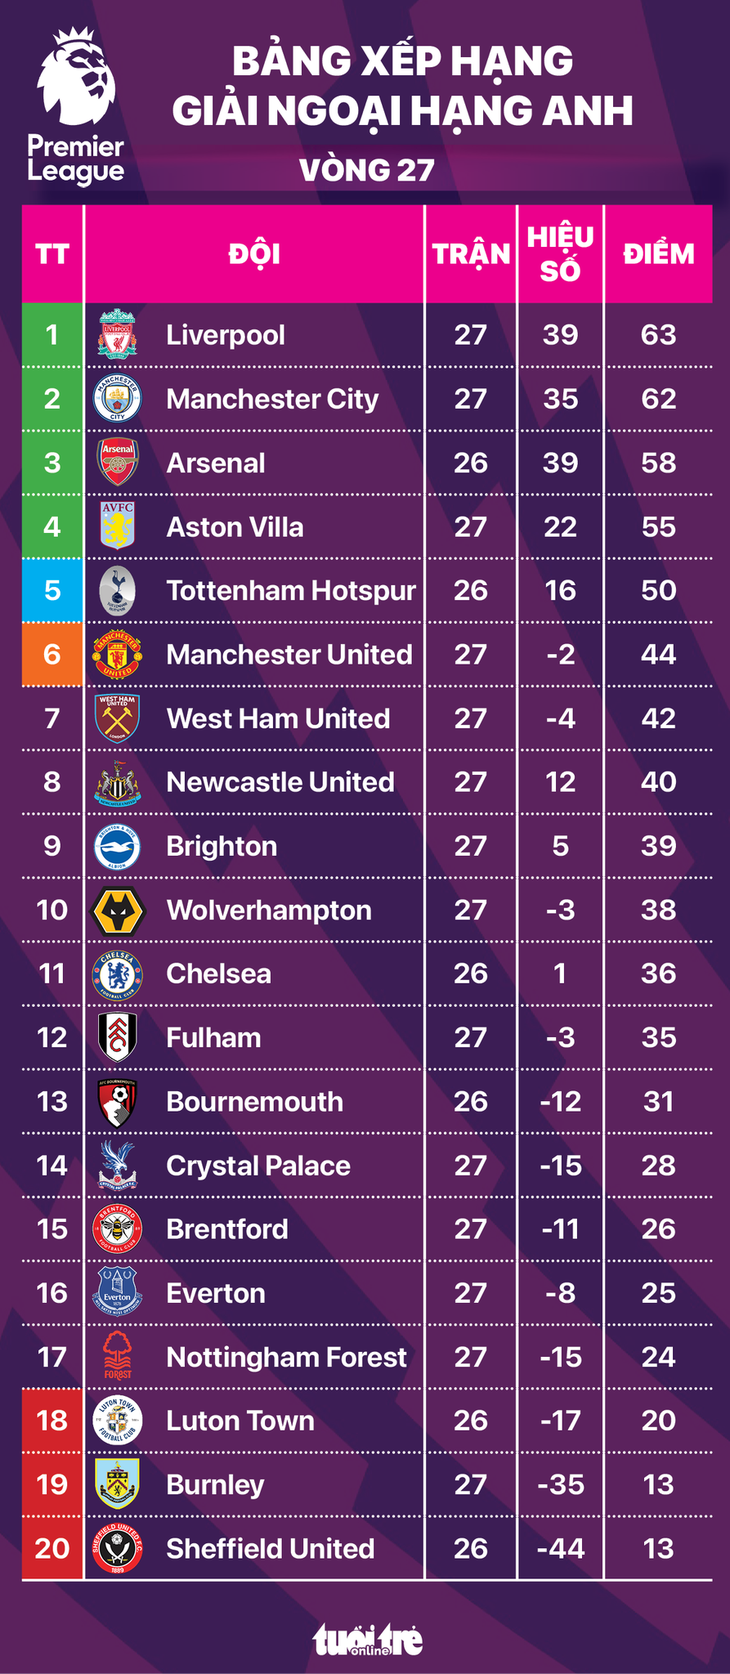 Bảng xếp hạng Premier League sau vòng 27 - Đồ họa: AN BÌNH